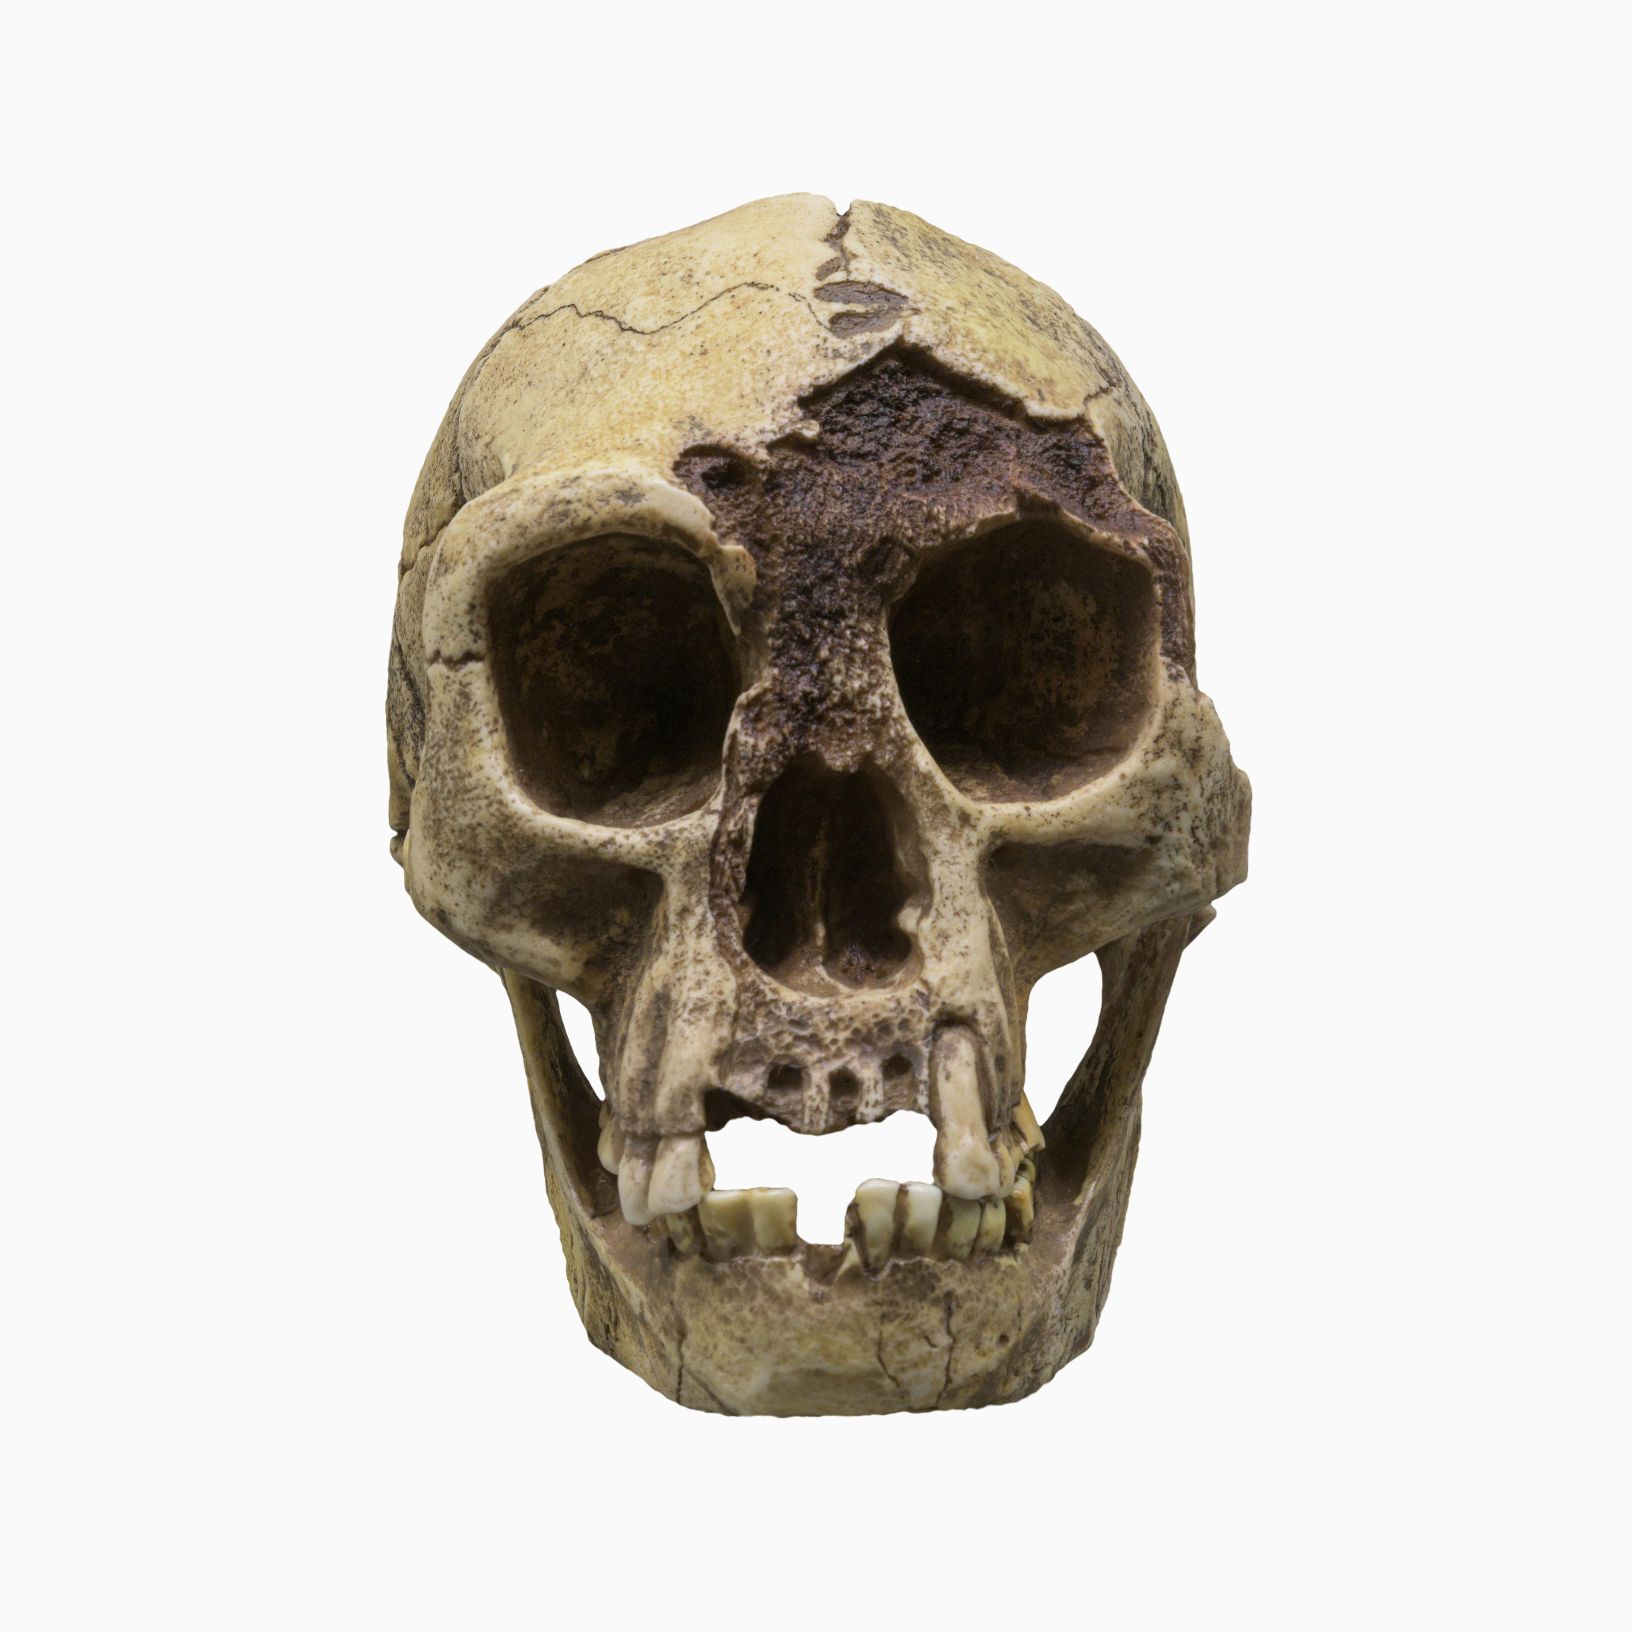 Kraniet af H. floresiensis (Flores Man), med tilnavnet 'Hobbit', er en art af små arkaiske mennesker, der beboede øen Flores, Indonesien. © Billedkredit: Dmitriy Moroz | Licenseret fra DreamsTime.com (Redaktionel/kommerciel brug Stock Photo, ID: 227004112)